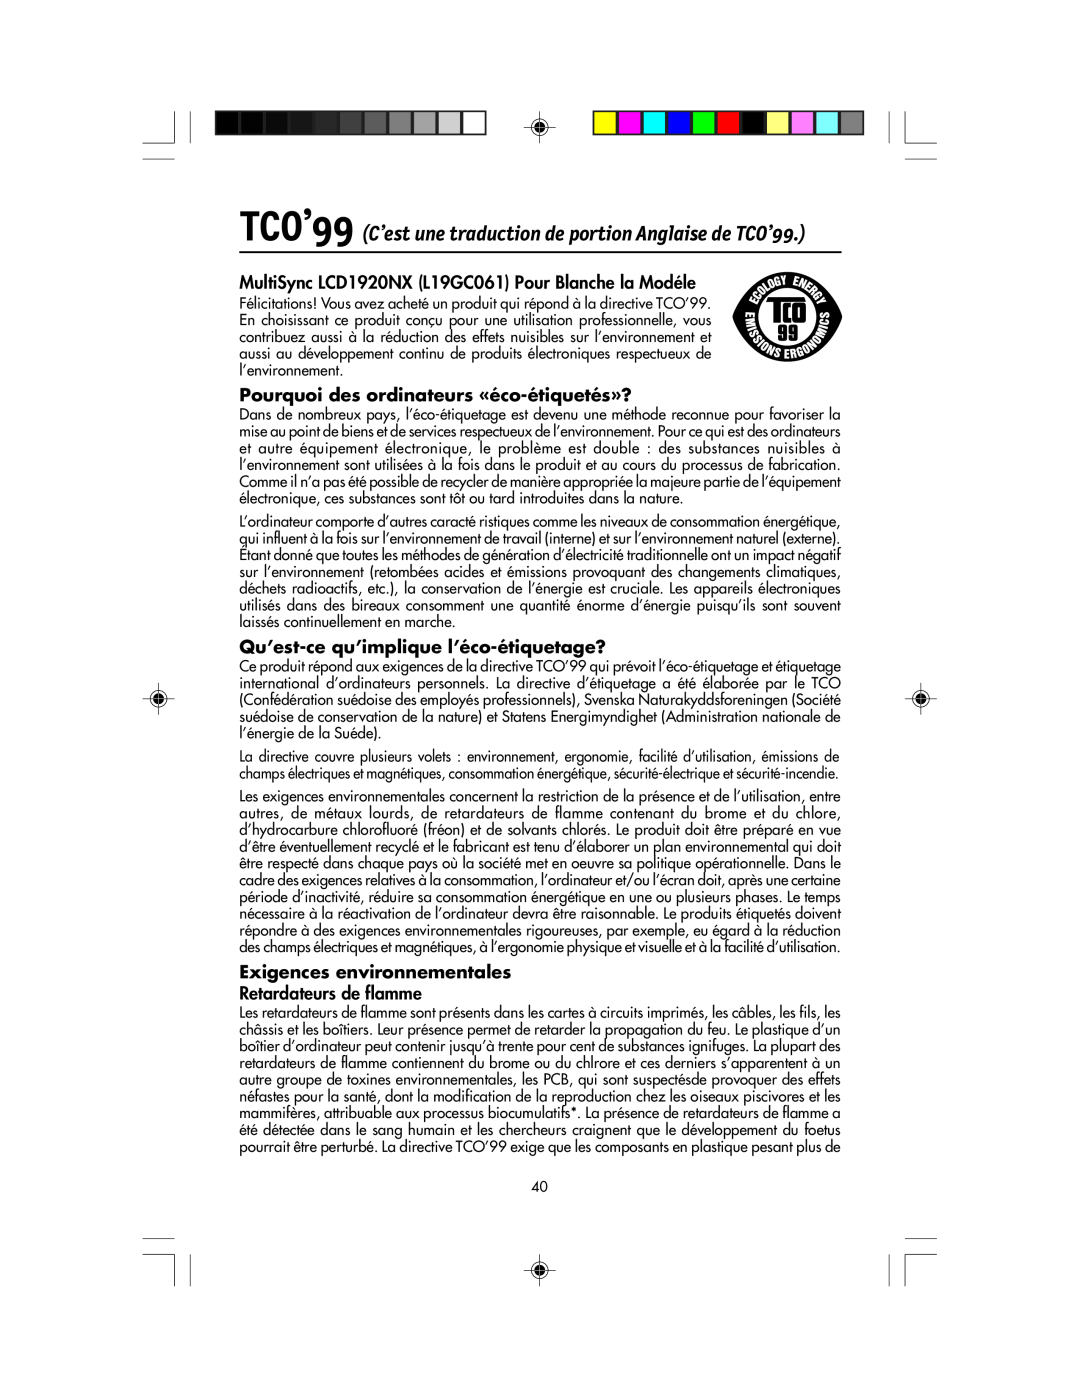 NEC LCD1920NX manual TCO’99 C’est une traduction de portion Anglaise de TCO’99, Retardateurs de flamme 